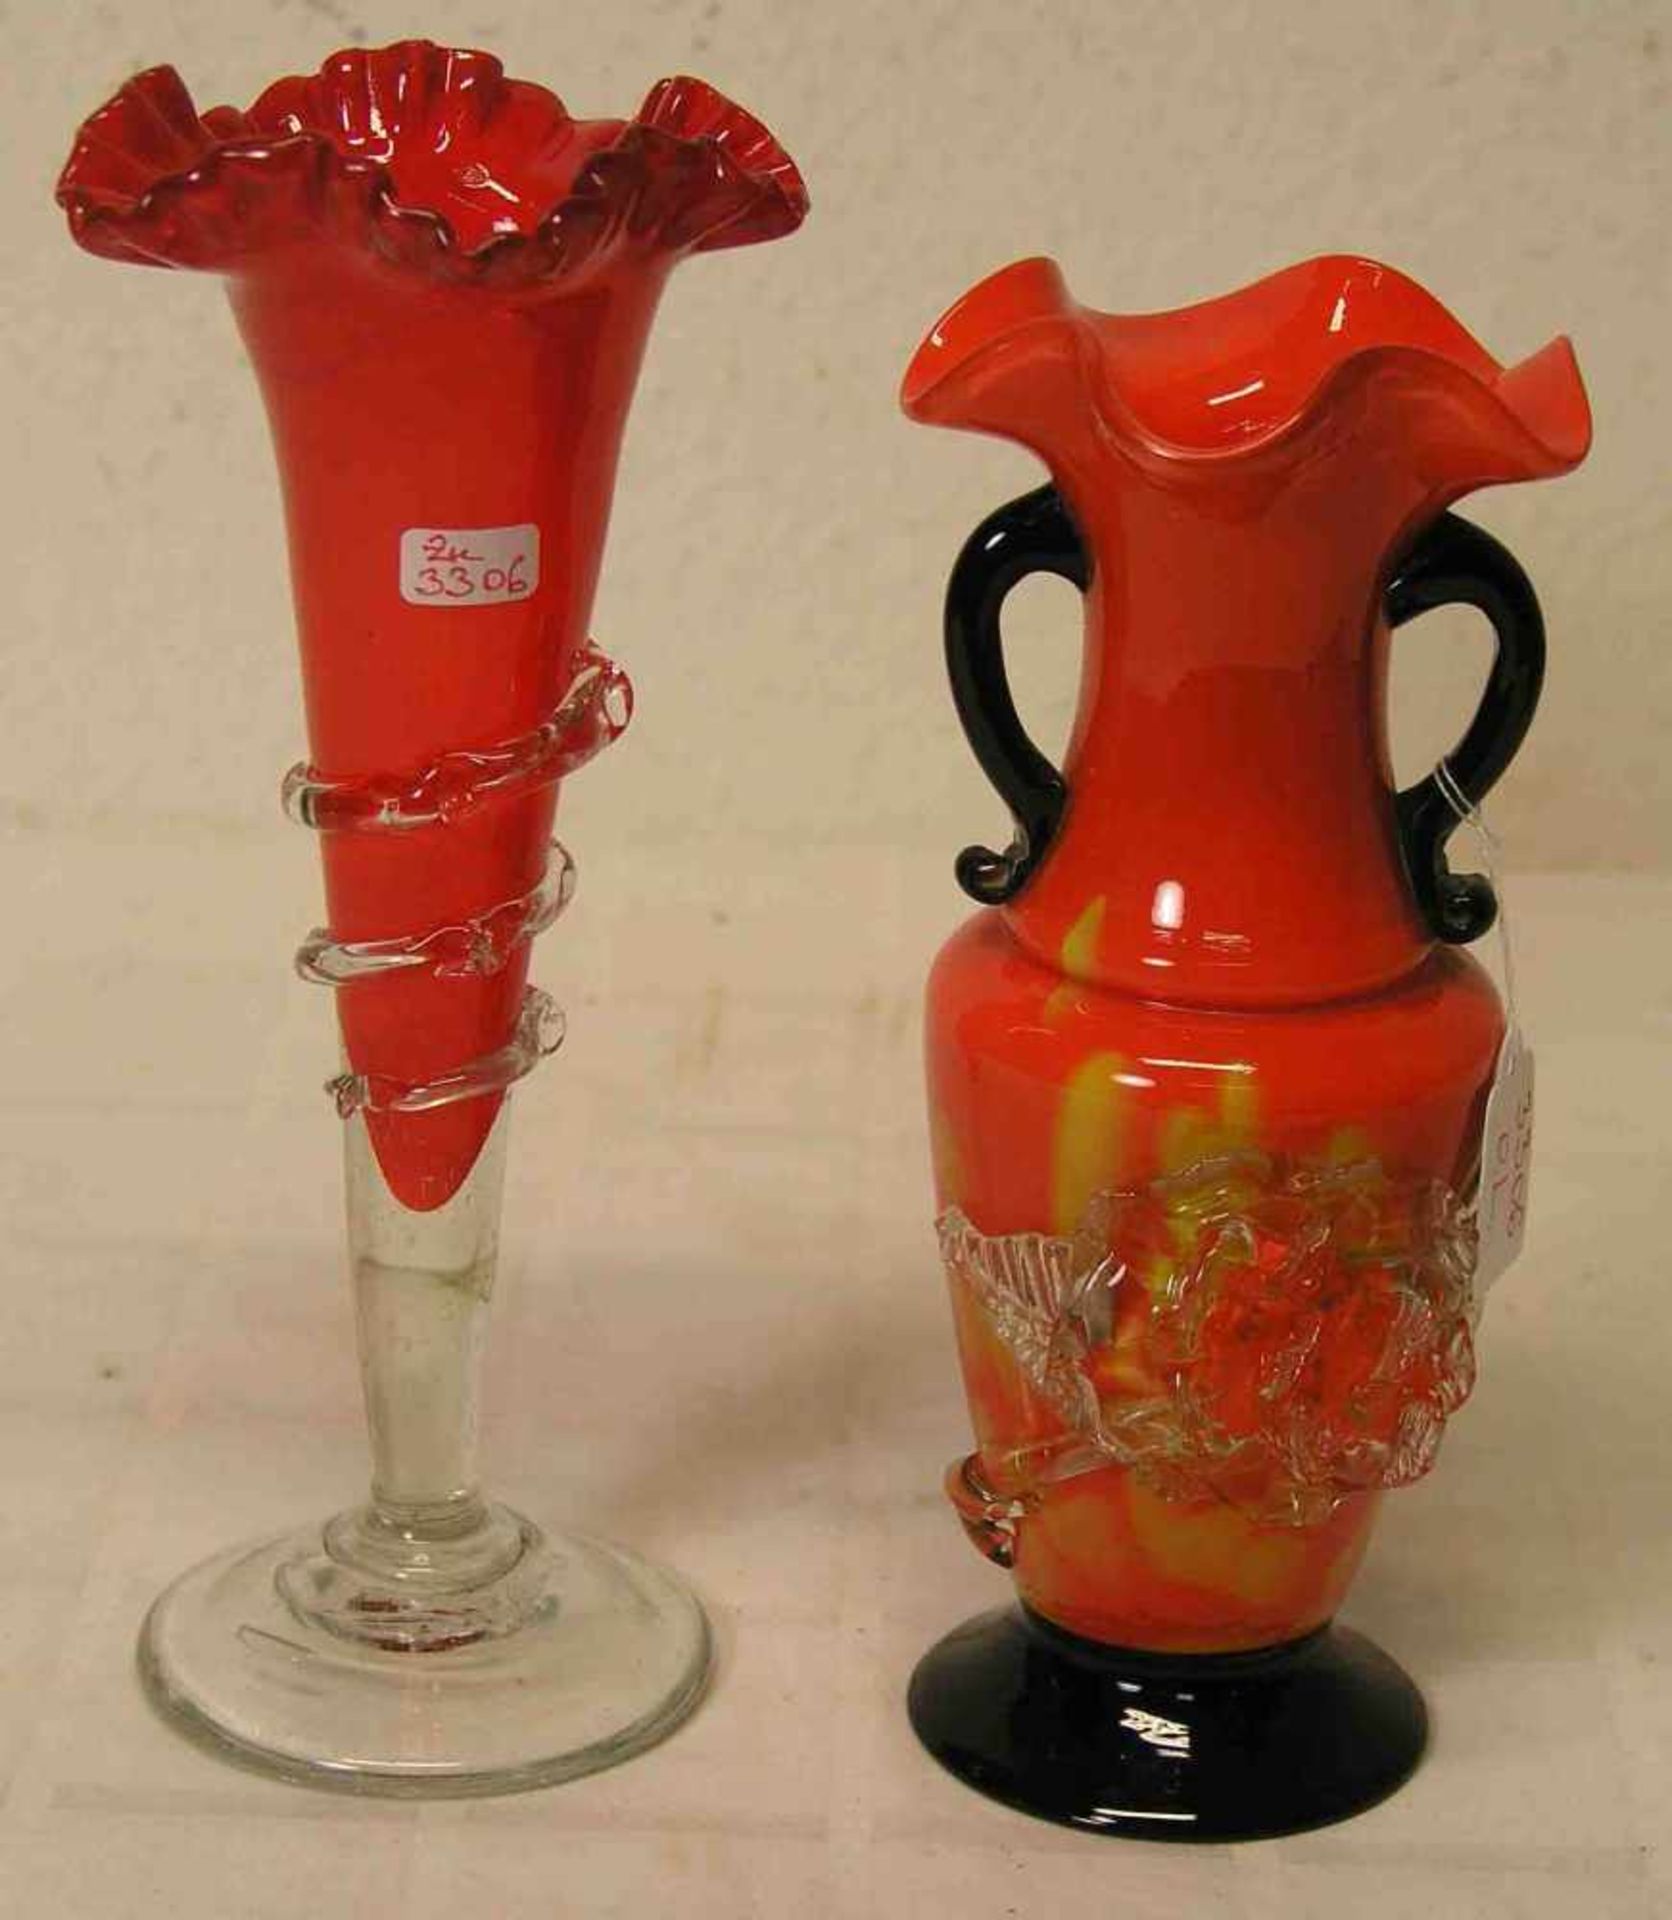 Zwei Designer-Vasen. Mundgeblasen, Höhen: 19 und 21cm.- - -20.17 % buyer's premium on the hammer